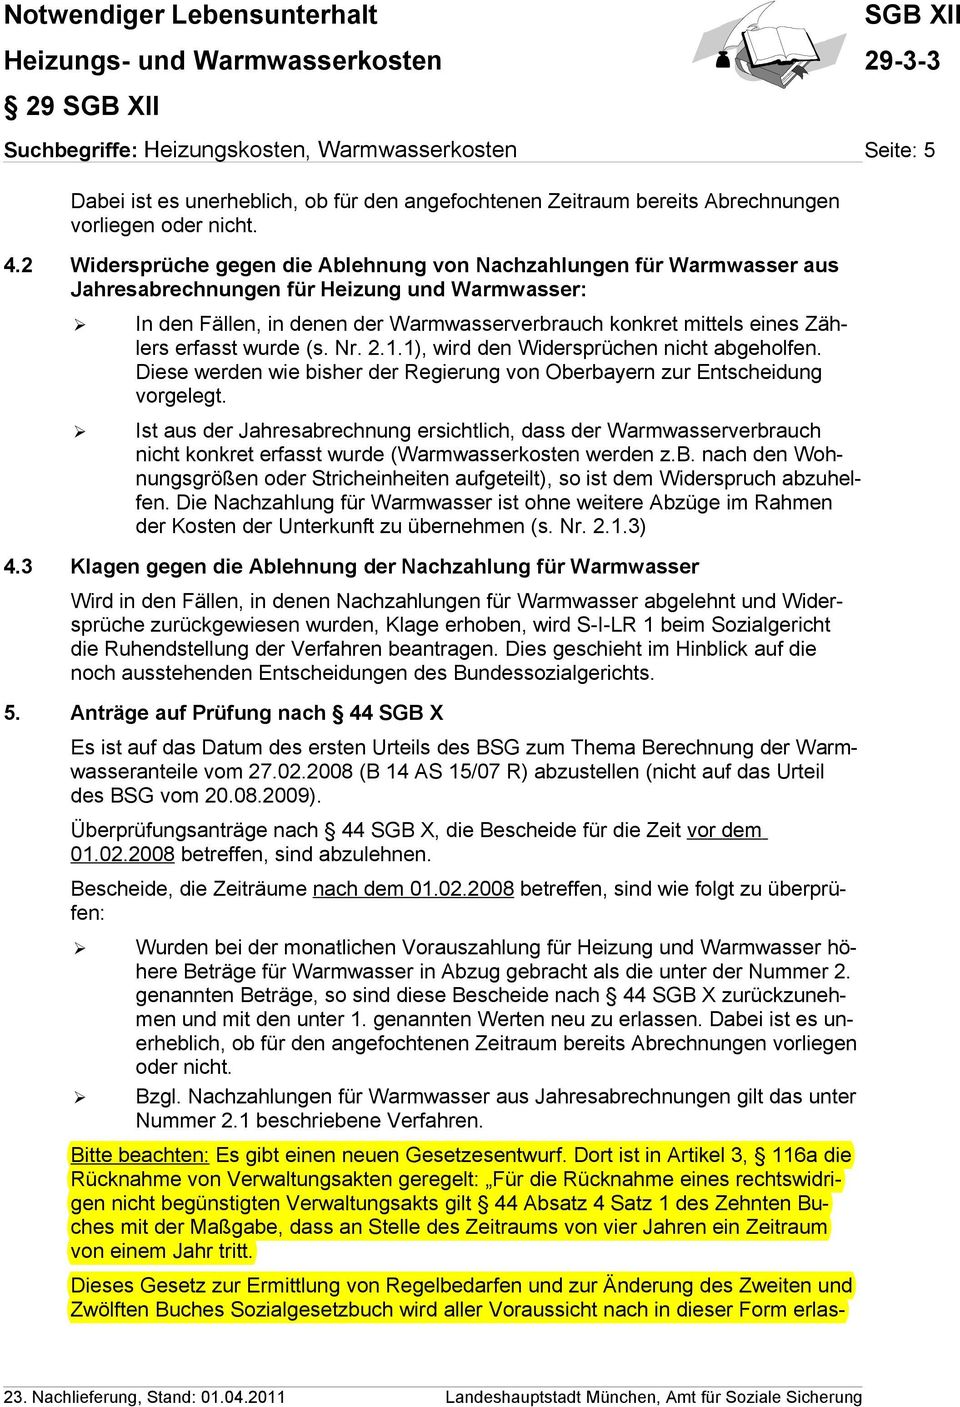 erfasst wurde (s. Nr. 2.1.1), wird den Widersprüchen nicht abgeholfen. Diese werden wie bisher der Regierung von Oberbayern zur Entscheidung vorgelegt.